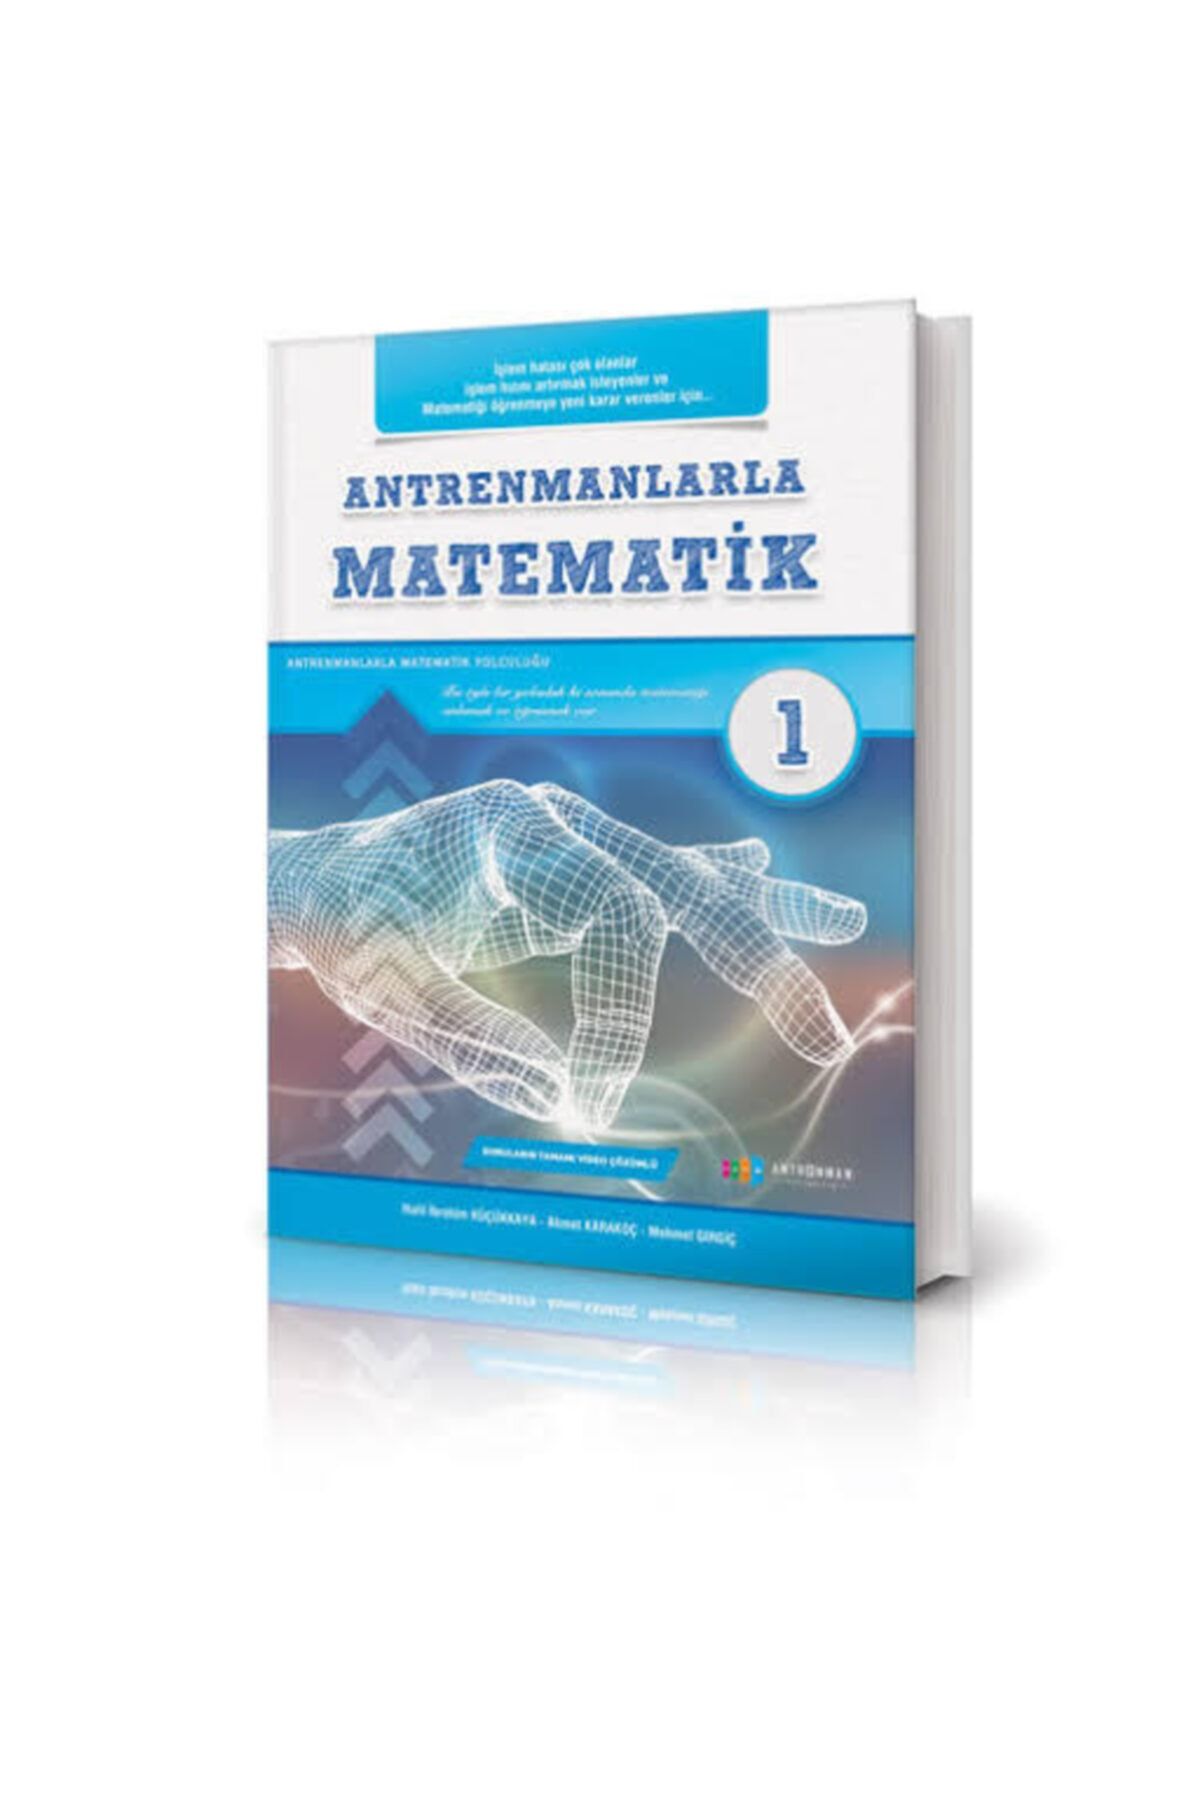 Antrenman Yayınları Antremanlarla Matematik-1